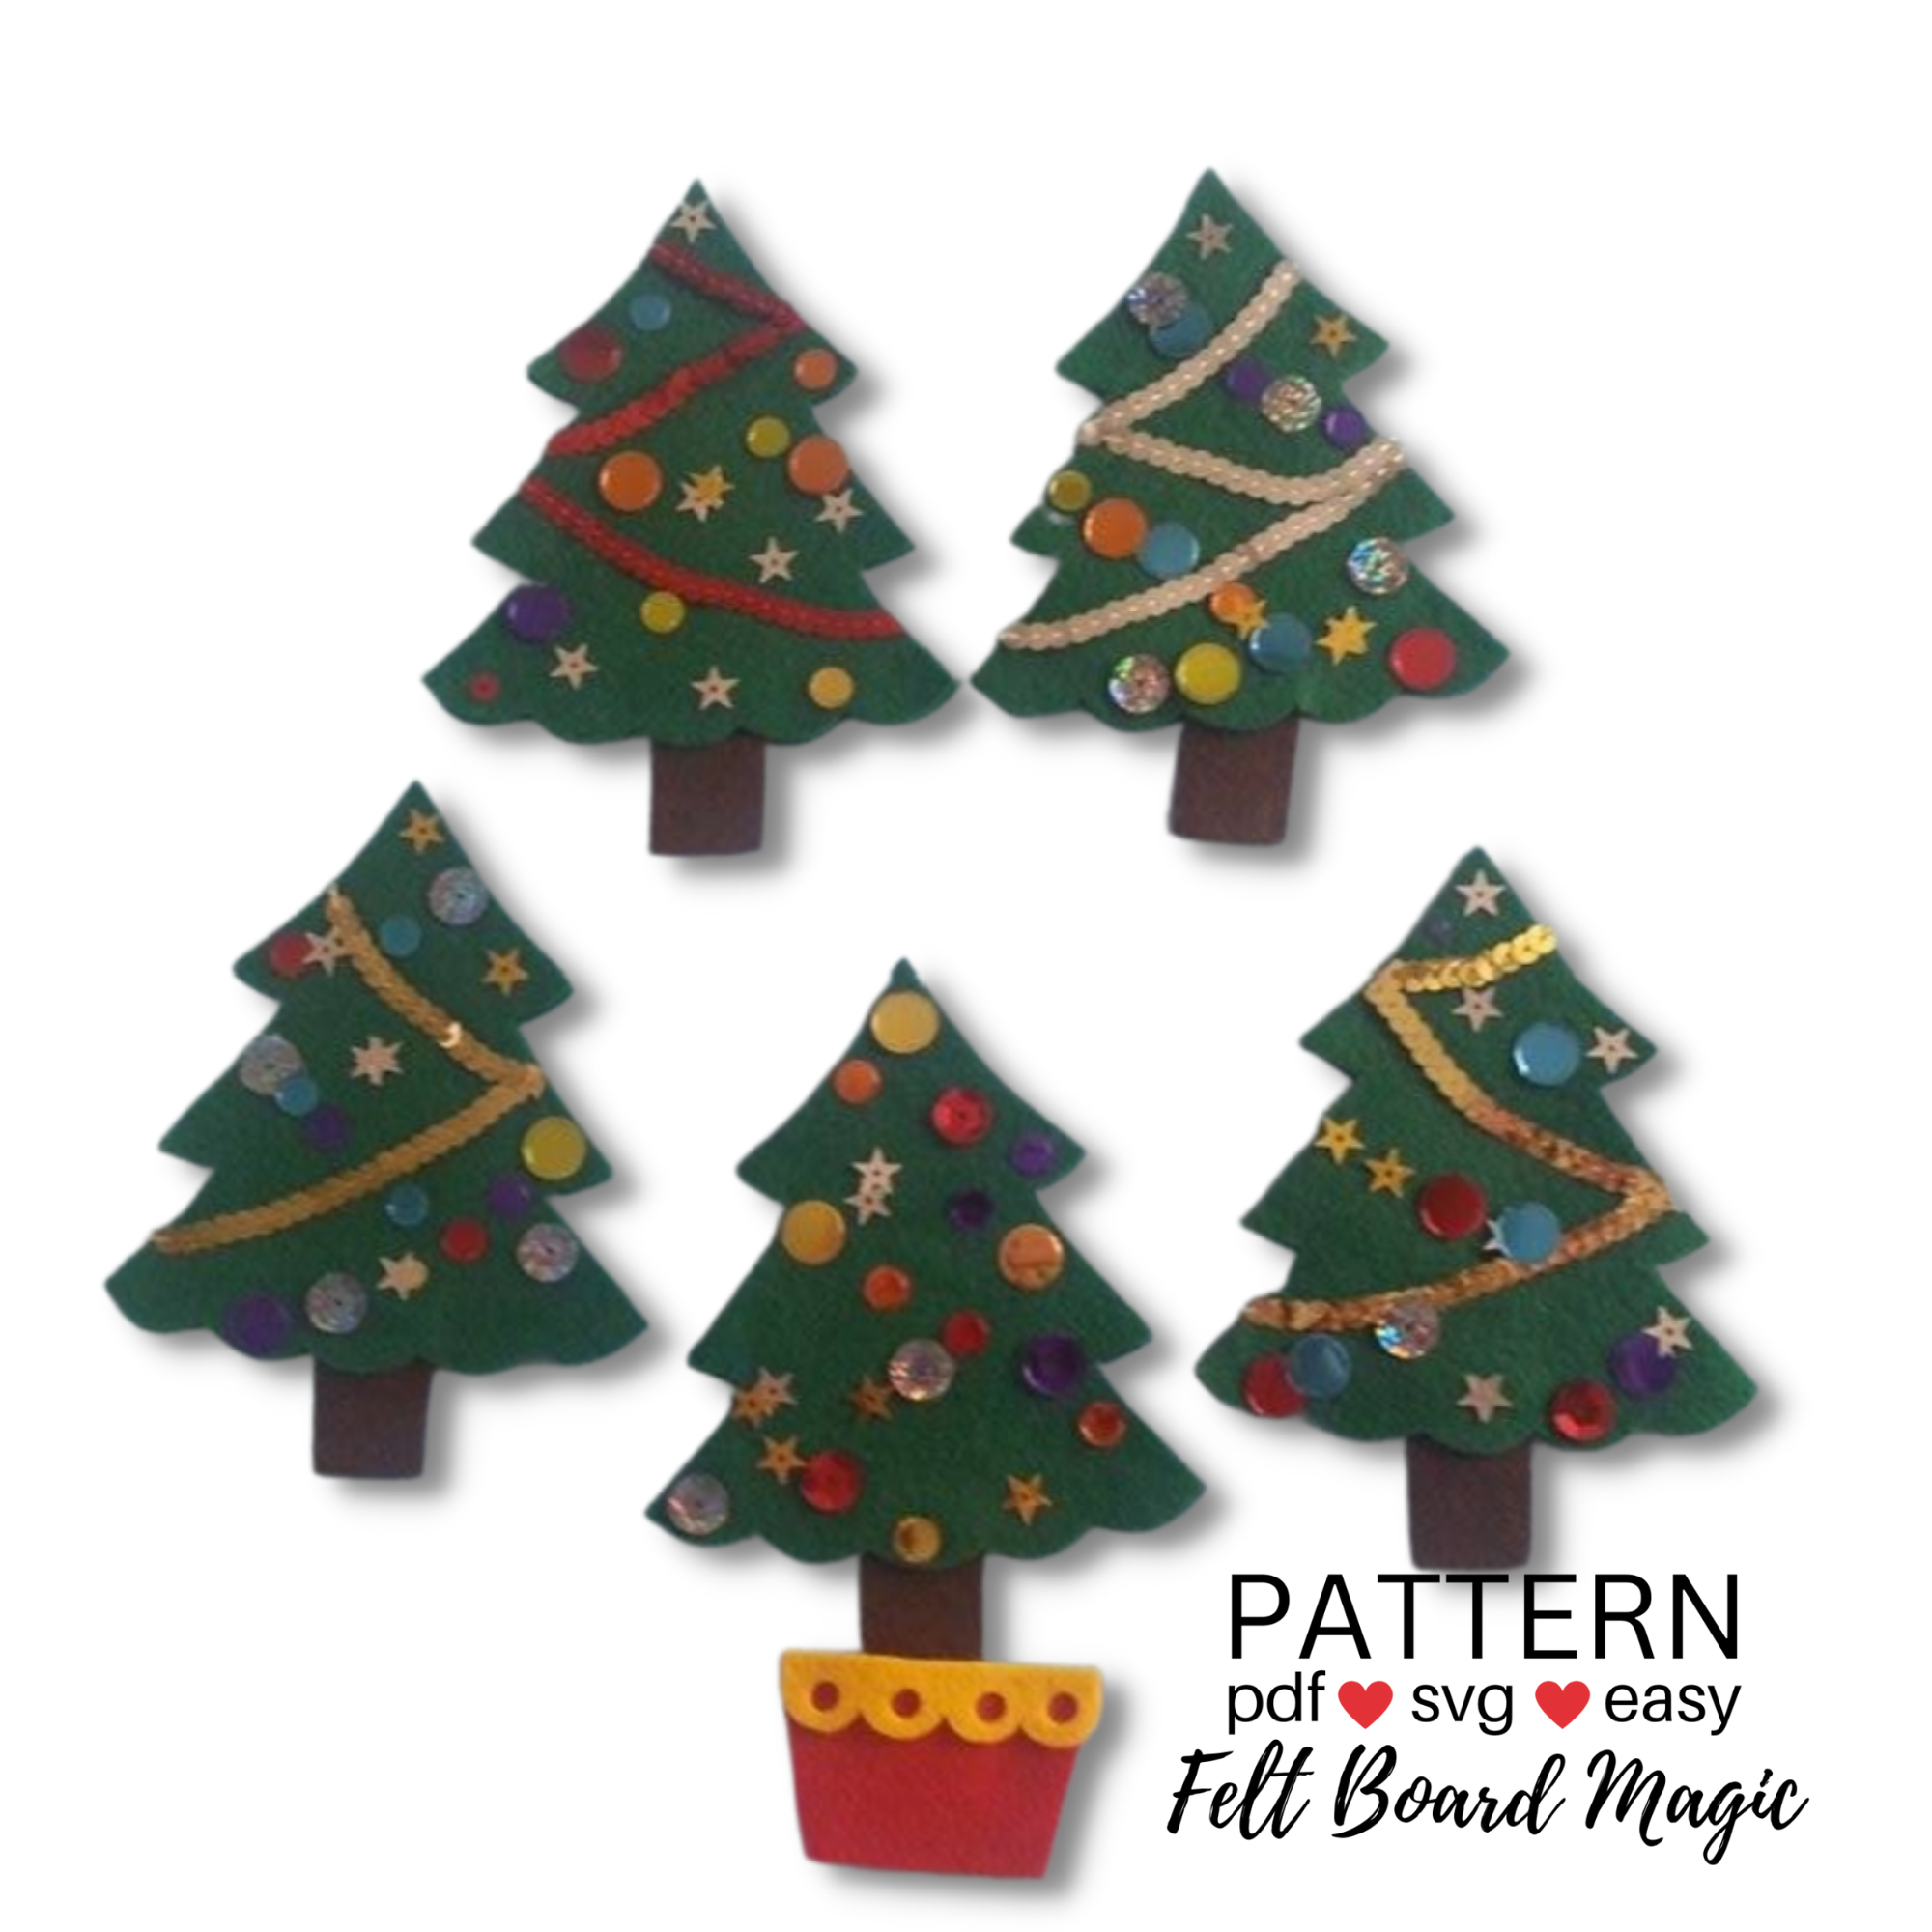 Felt Christmas Ornaments Felt Ornaments Patterns Felt SVG Pattern